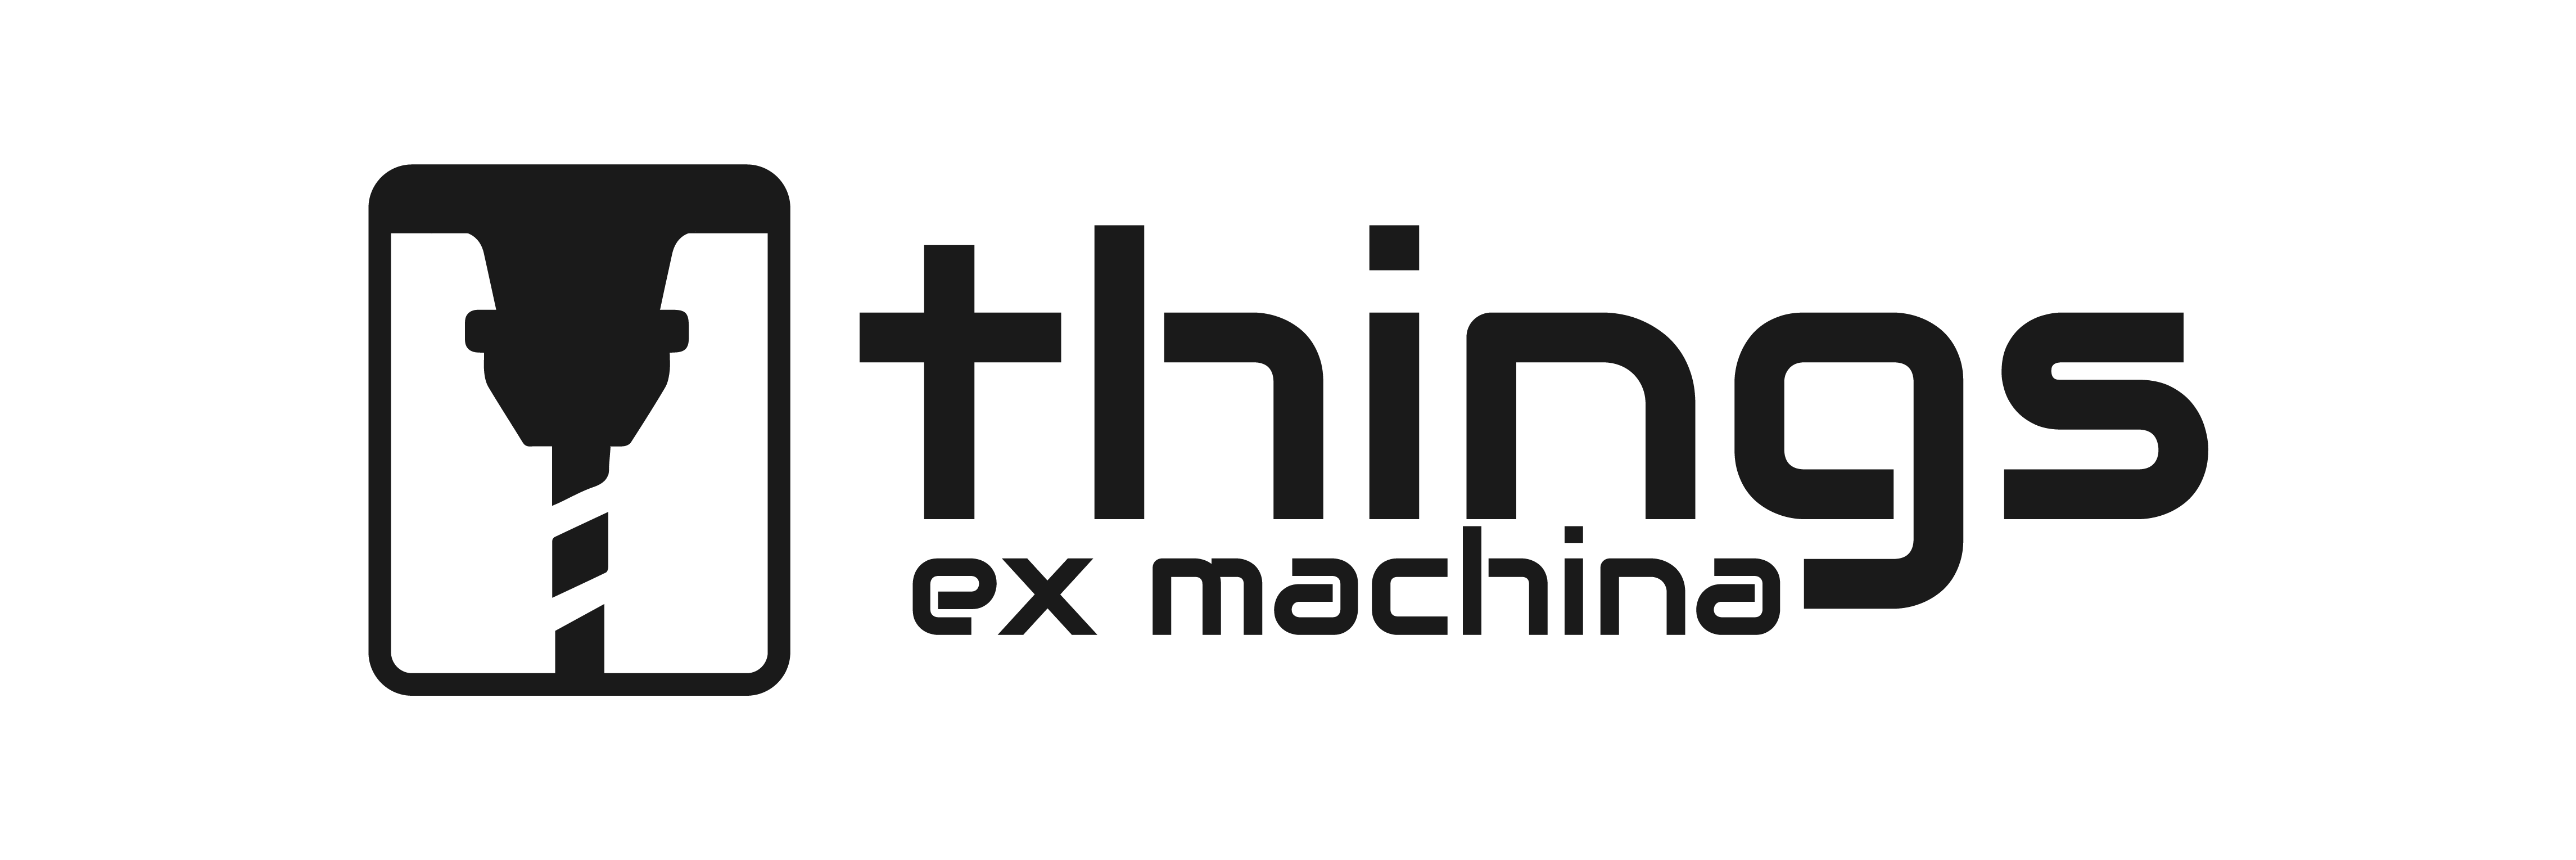 things ex machina